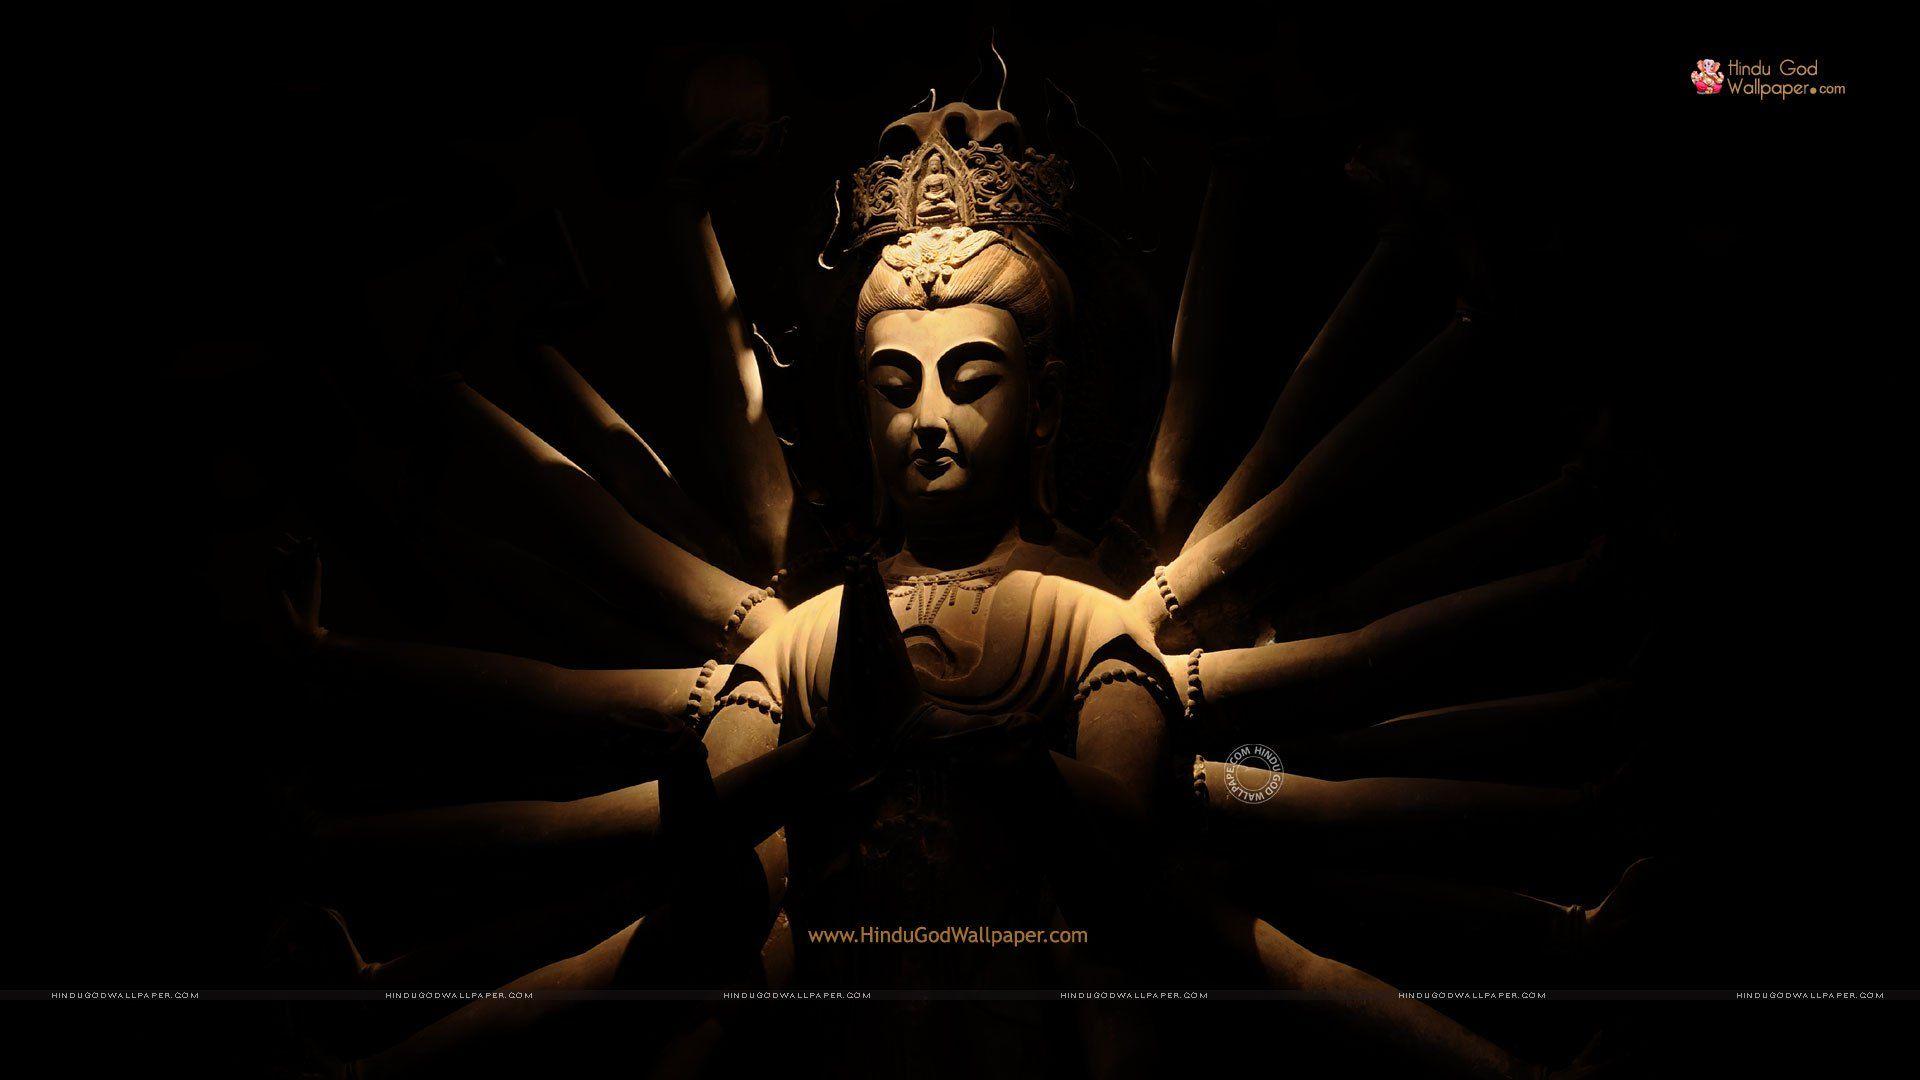 Gautam Buddha Image, Lord Buddha Photo, Pics & HD Wallpaper